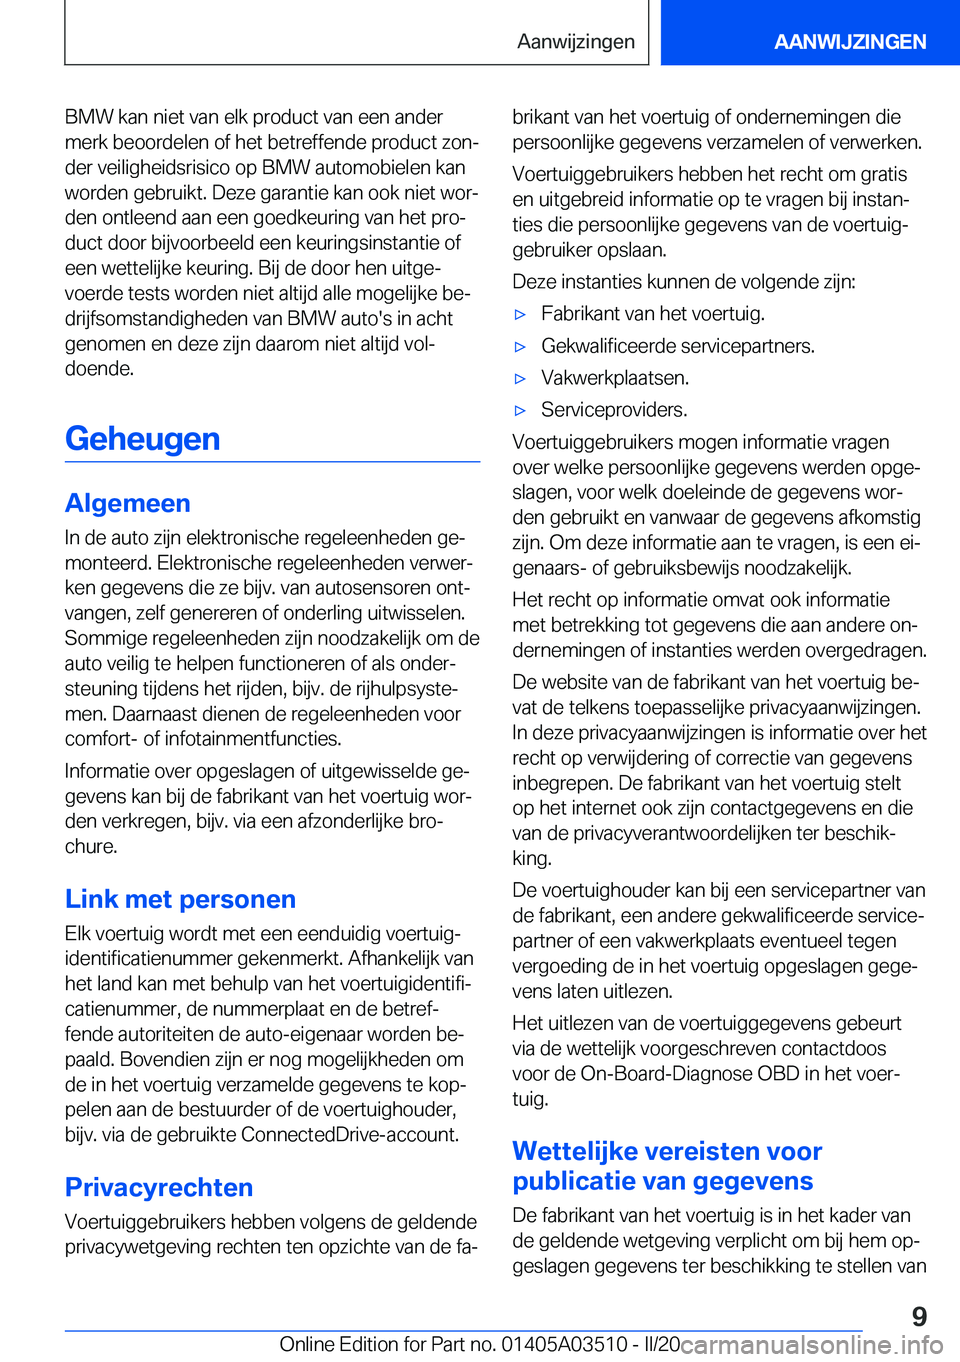 BMW X3 2020  Instructieboekjes (in Dutch) �B�M�W��k�a�n��n�i�e�t��v�a�n��e�l�k��p�r�o�d�u�c�t��v�a�n��e�e�n��a�n�d�e�r�m�e�r�k��b�e�o�o�r�d�e�l�e�n��o�f��h�e�t��b�e�t�r�e�f�f�e�n�d�e��p�r�o�d�u�c�t��z�o�nj
�d�e�r��v�e�i�l�i�g�